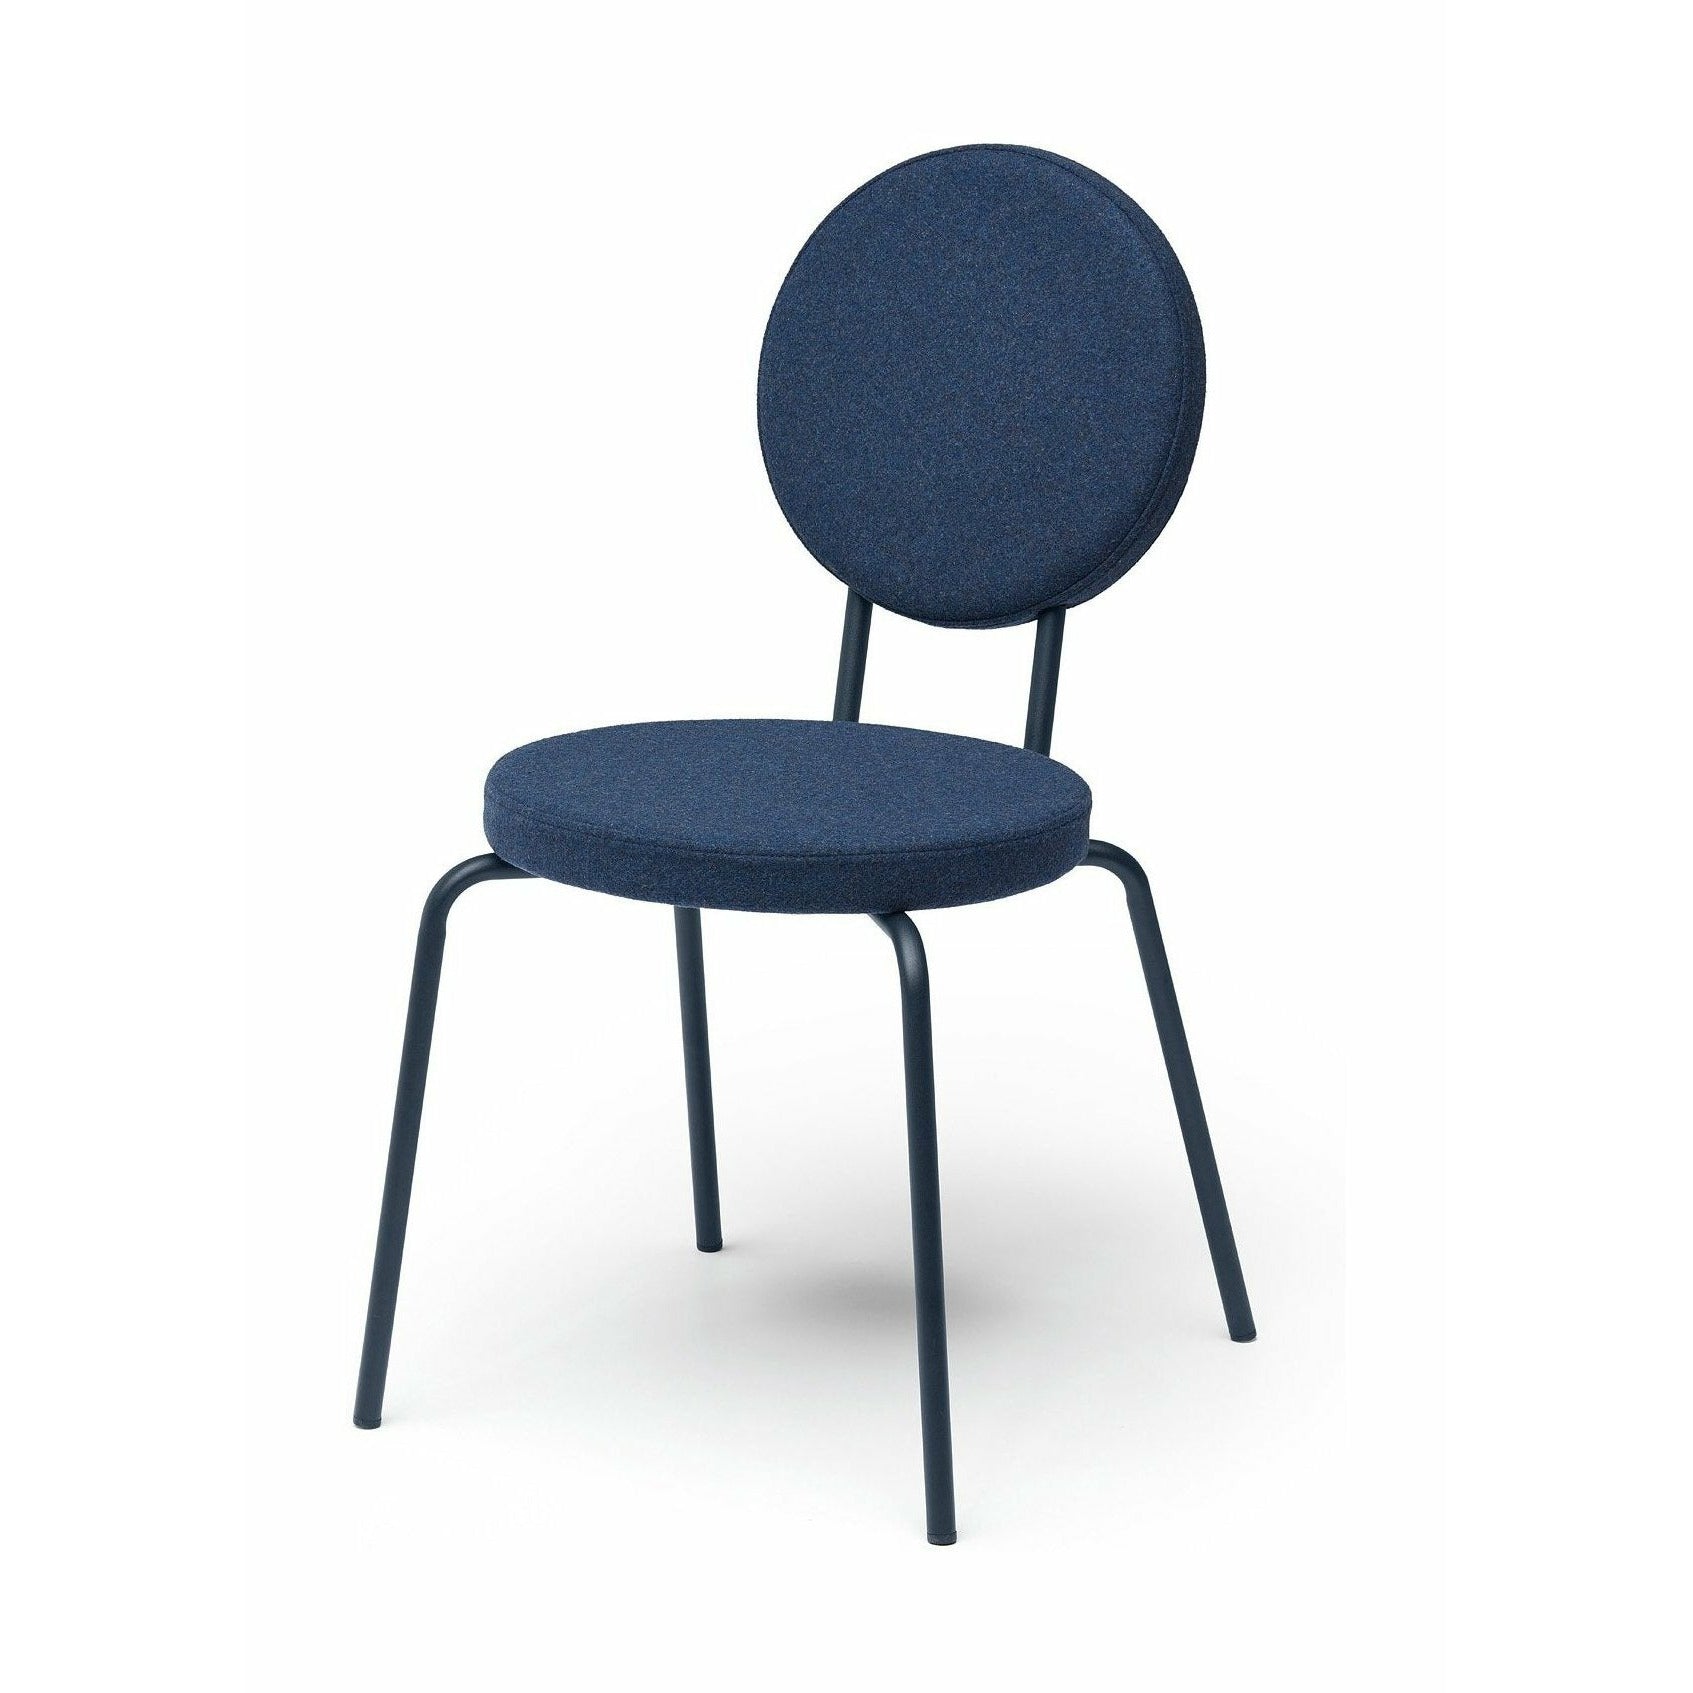 Sedile della sedia opzione Puik e schienale round, blu scuro